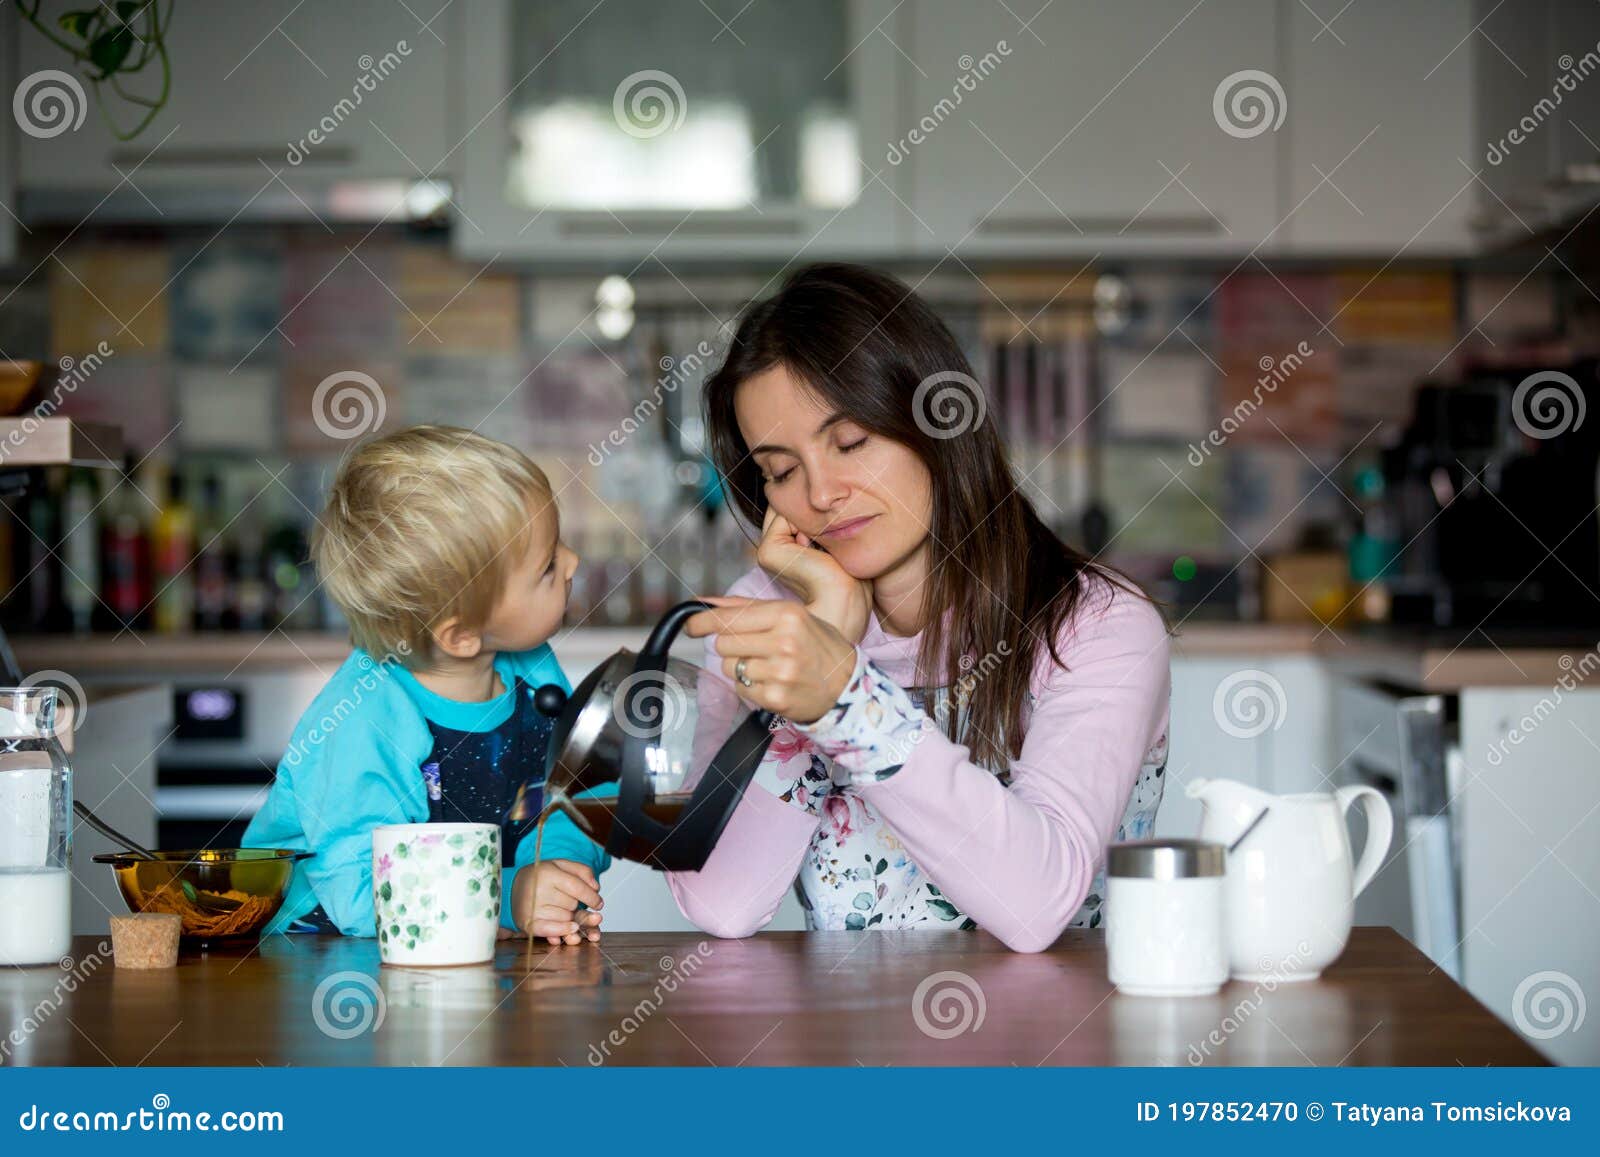 Herdenkings Marxistisch waterbestendig Tired Moeder, Vrouw Die 's Ochtends Koffie Drinkt Terwijl Kind Ontbijt Eet  Stock Foto - Image of graangewas, keuken: 197852470